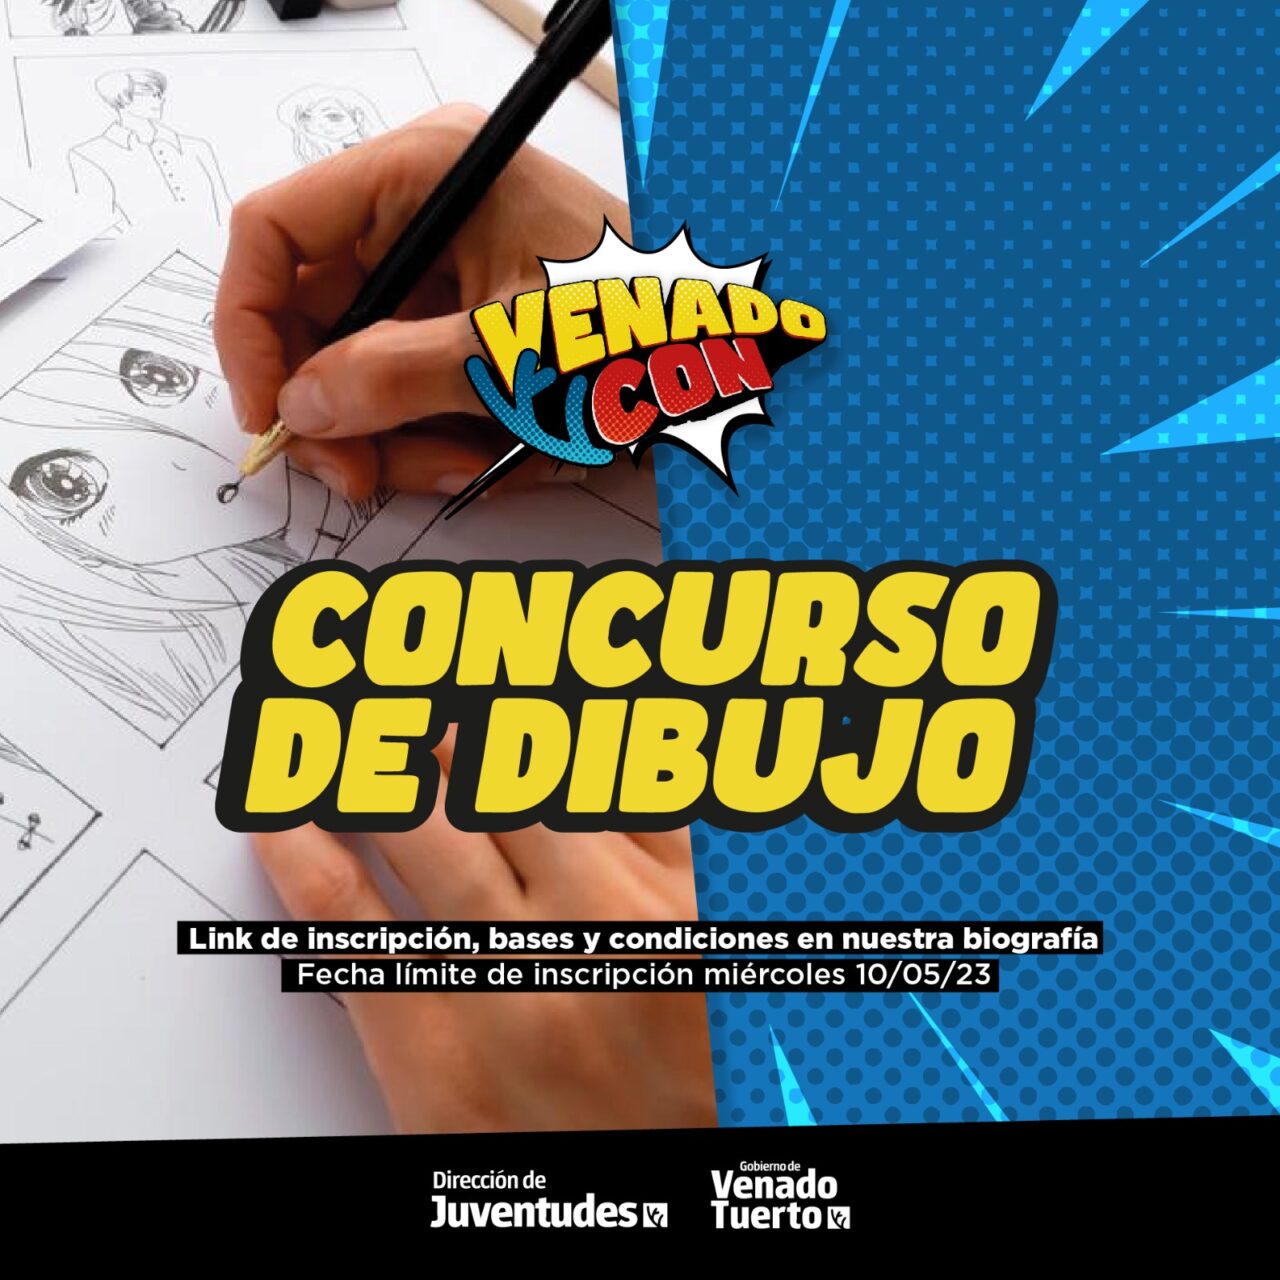 Segunda edición de VenadoCon en la Casa del Bicentenario